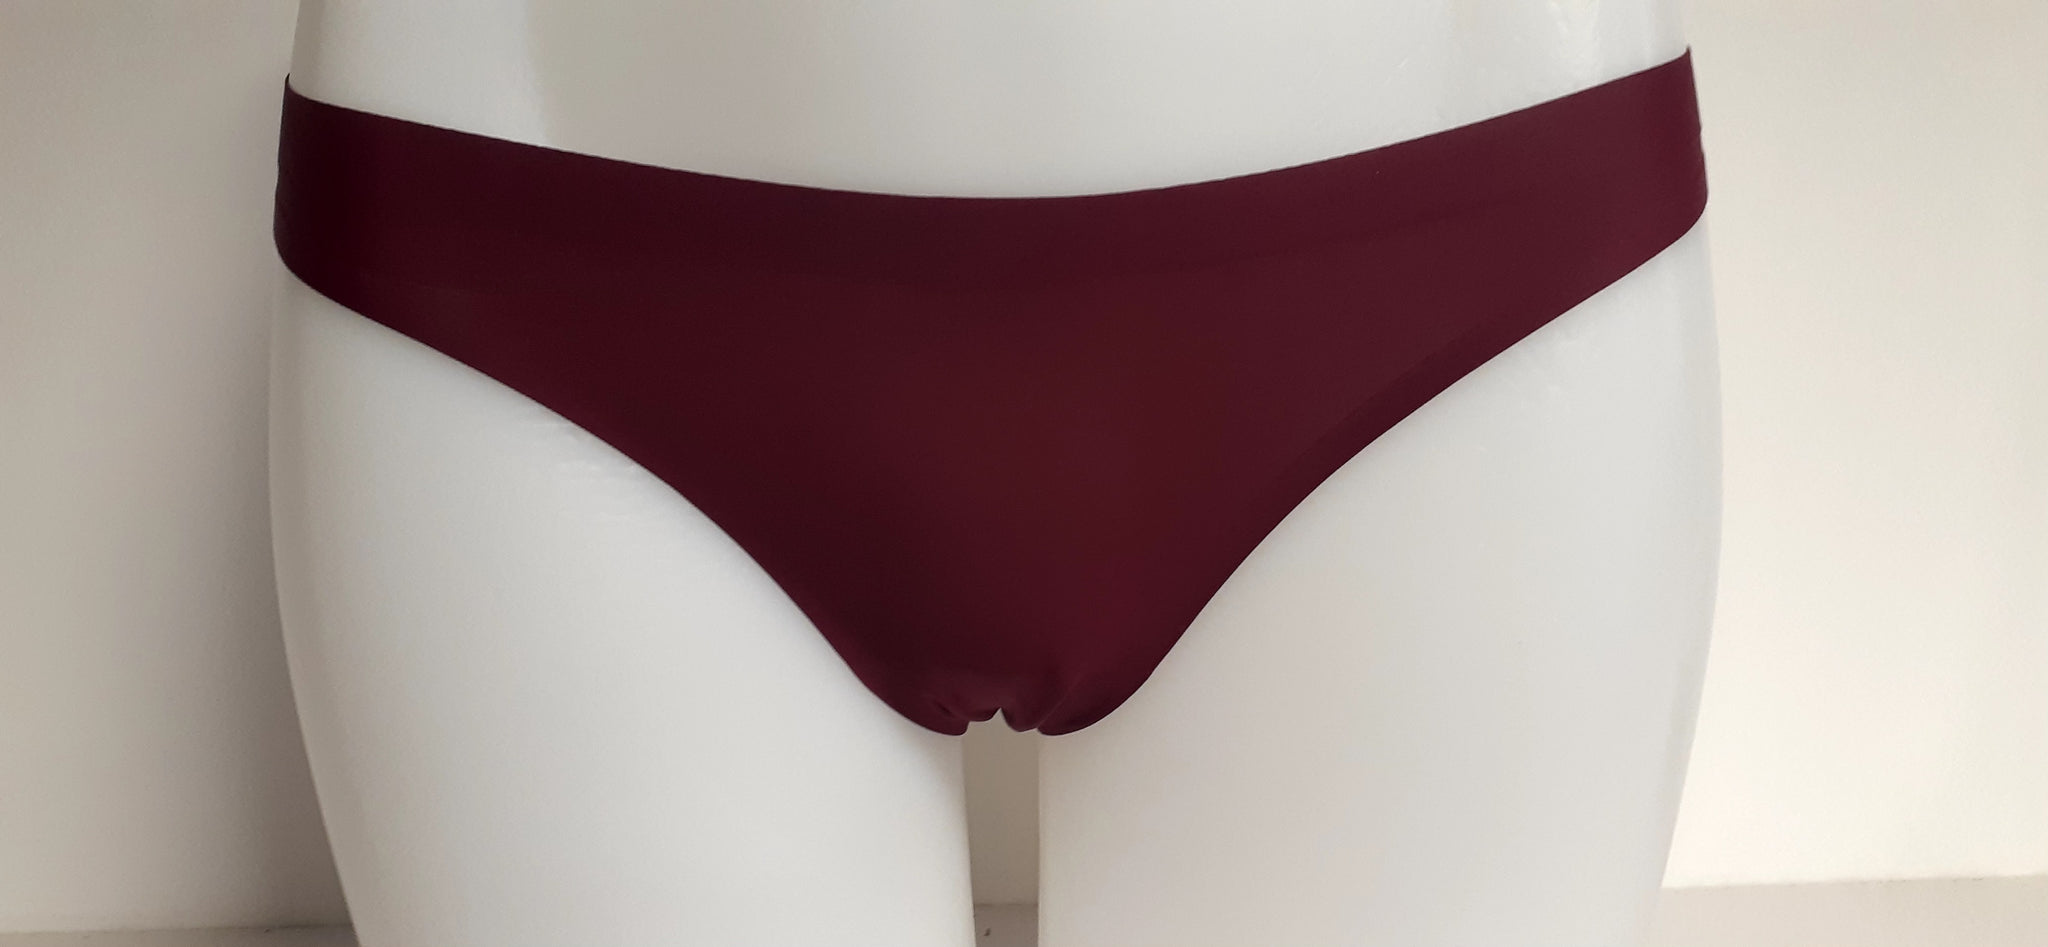 Women Seamless Thongs Mid-Rise Comfy Underwear G-Strings Panties